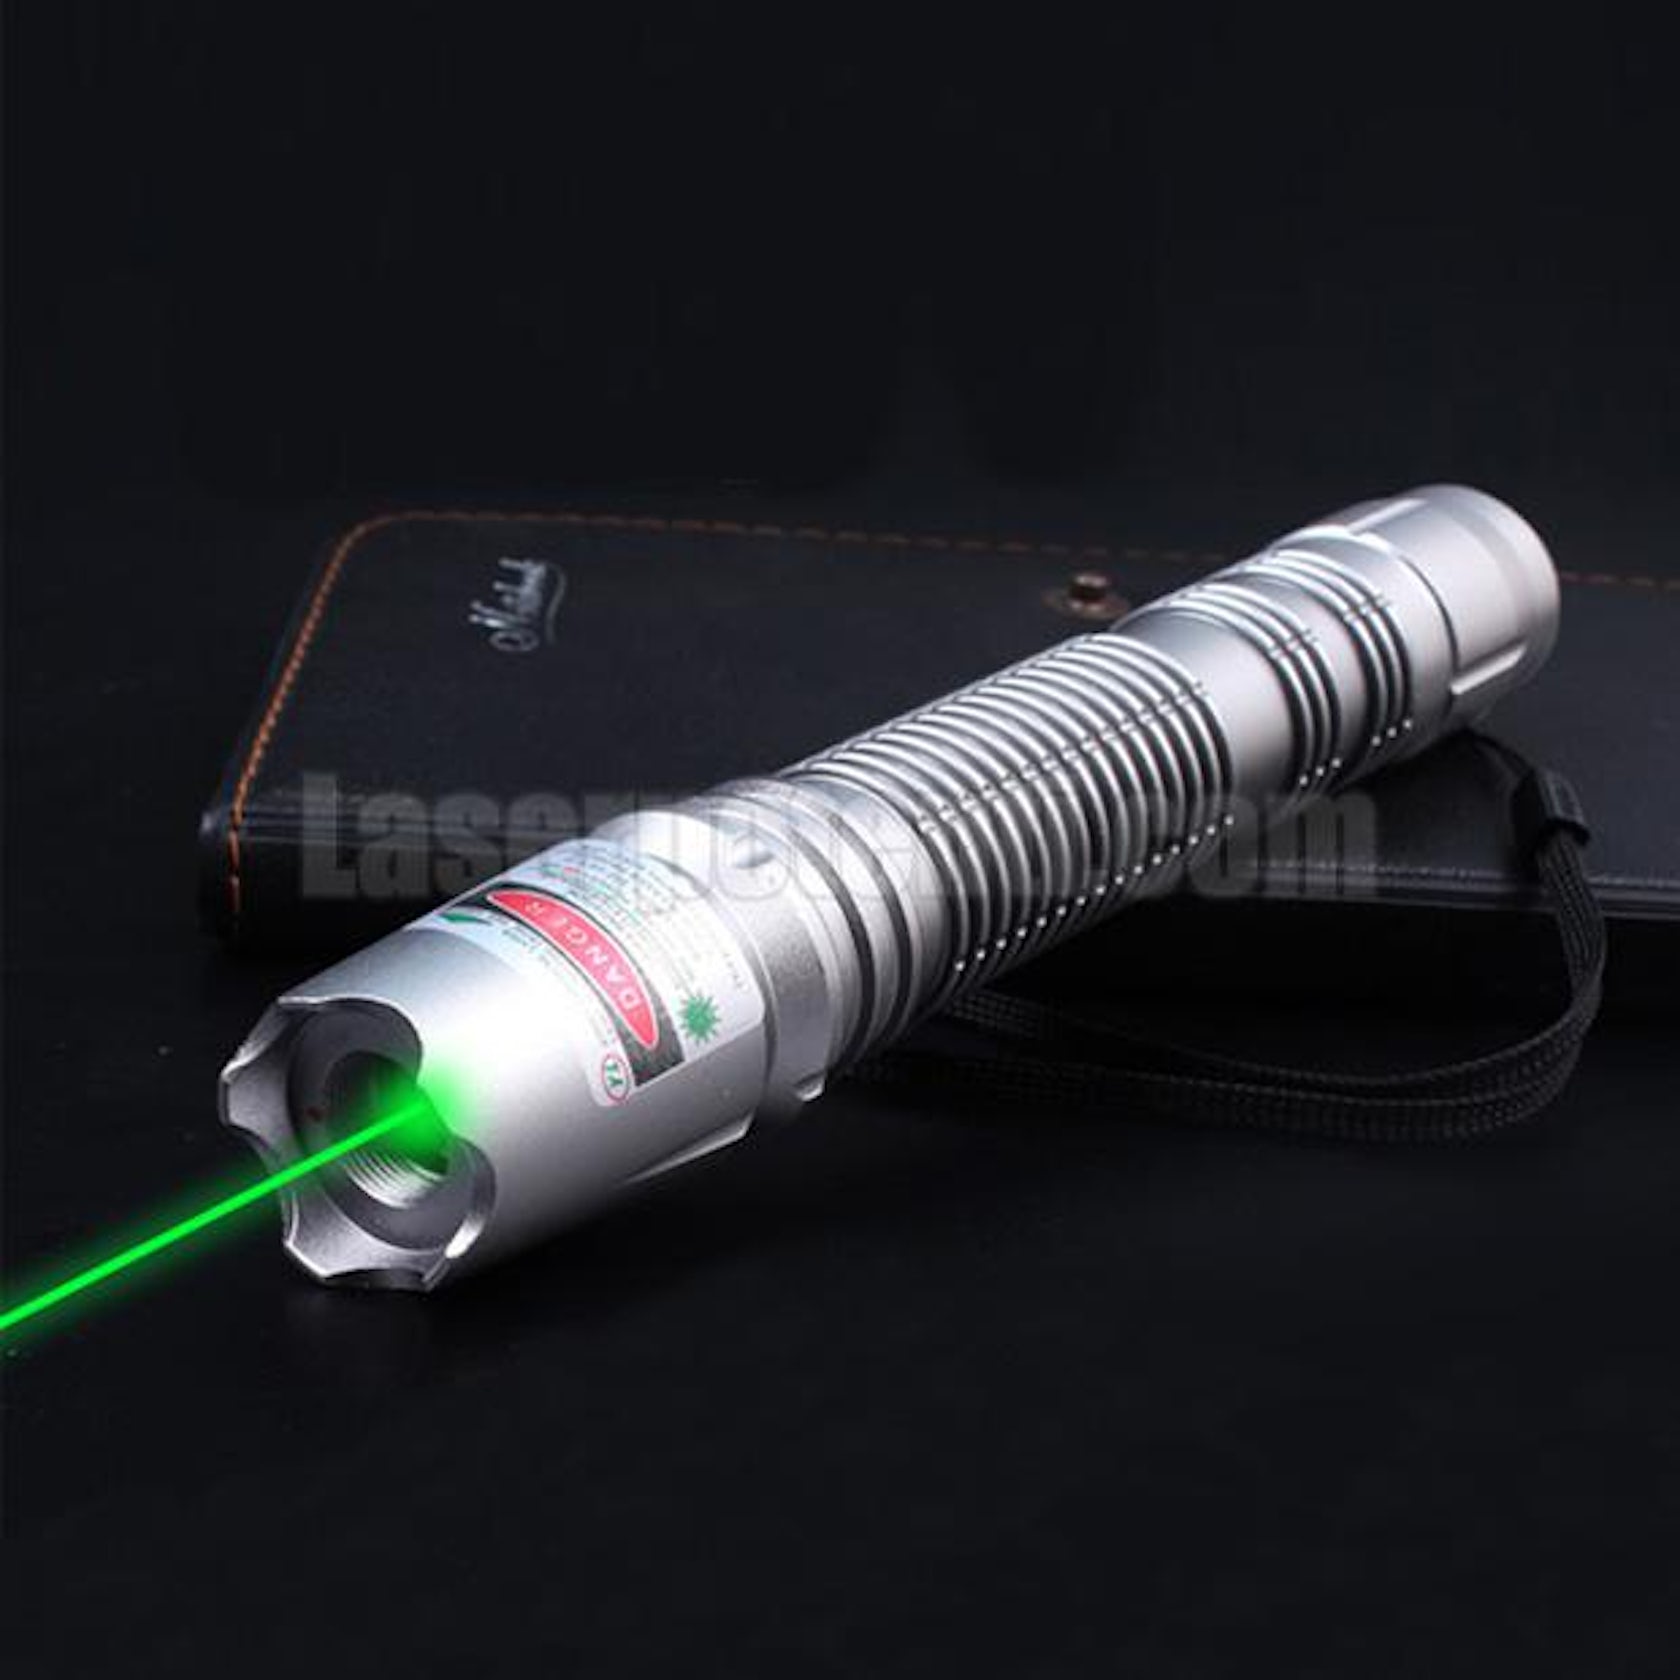 Il puntatore laser potente viene utilizzato in applicazioni